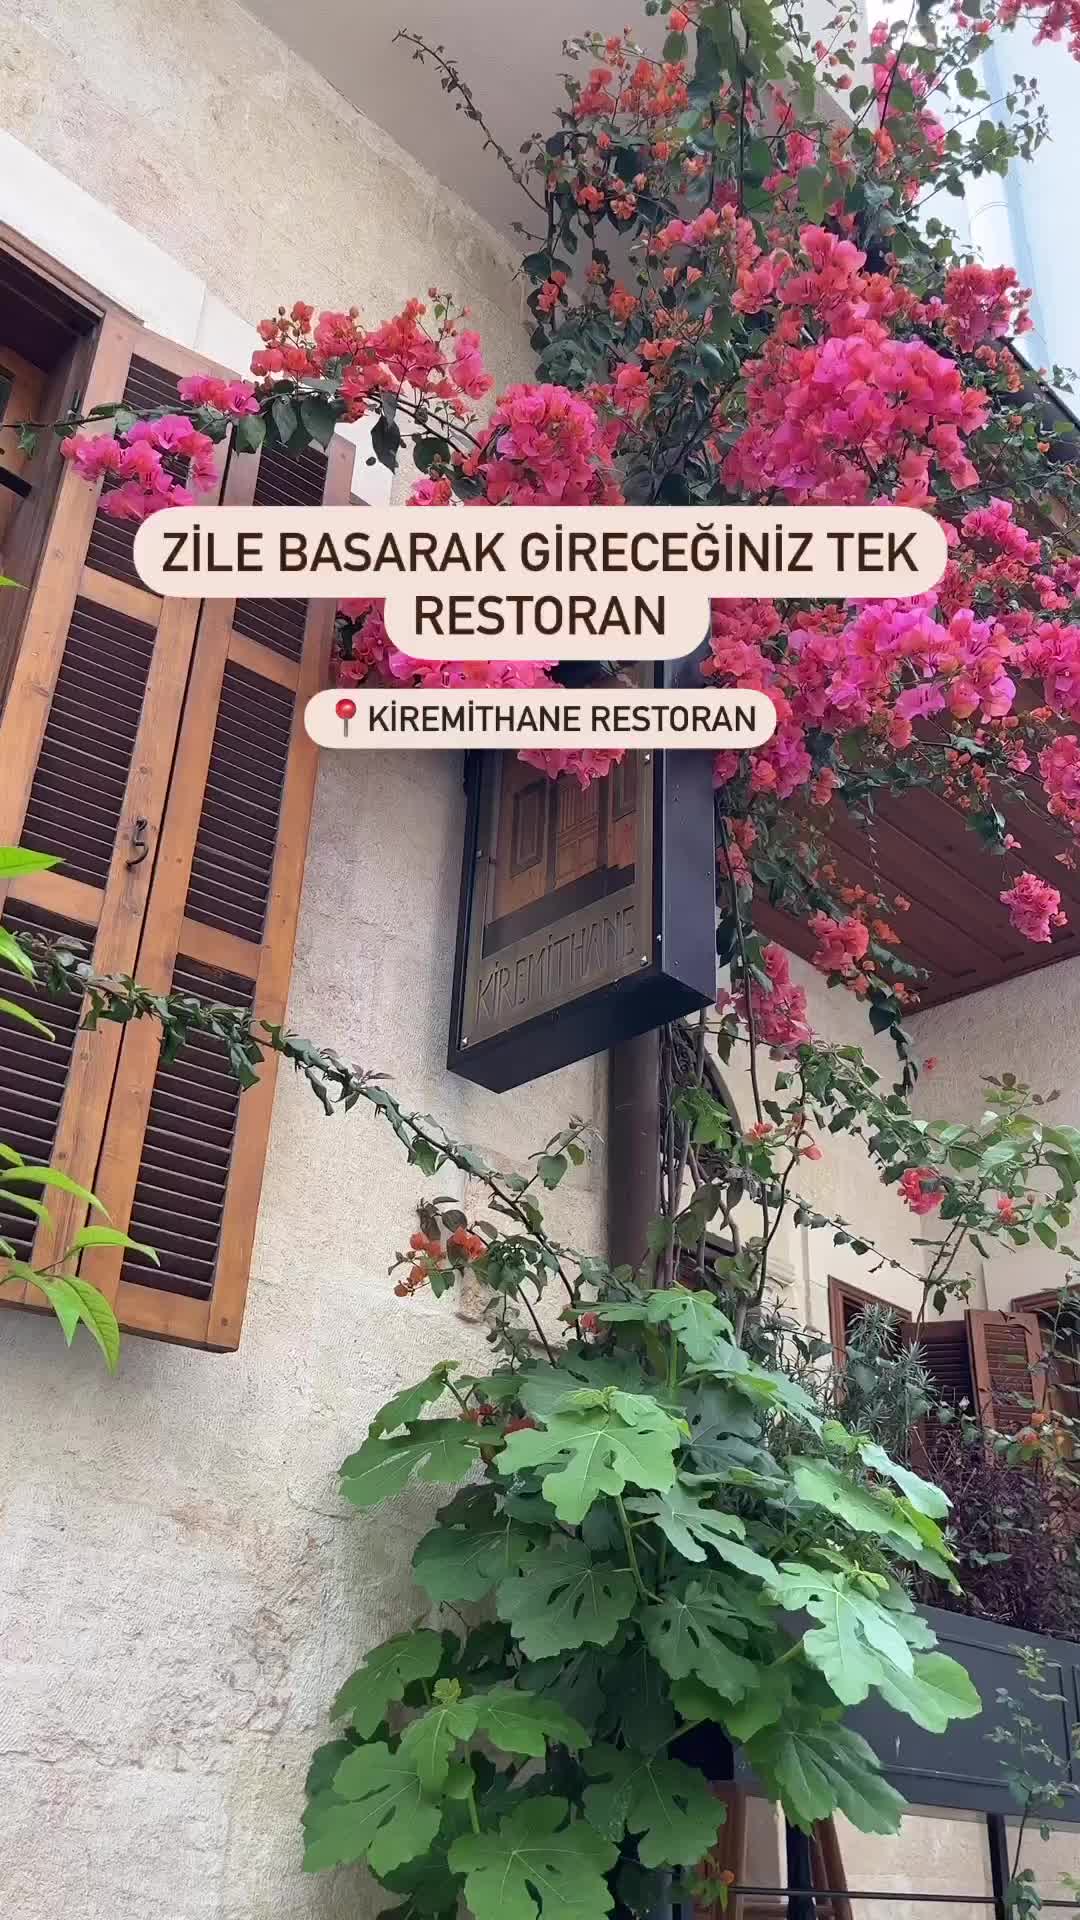 Mersin'in En Romantik Restoranı: Kiremithane